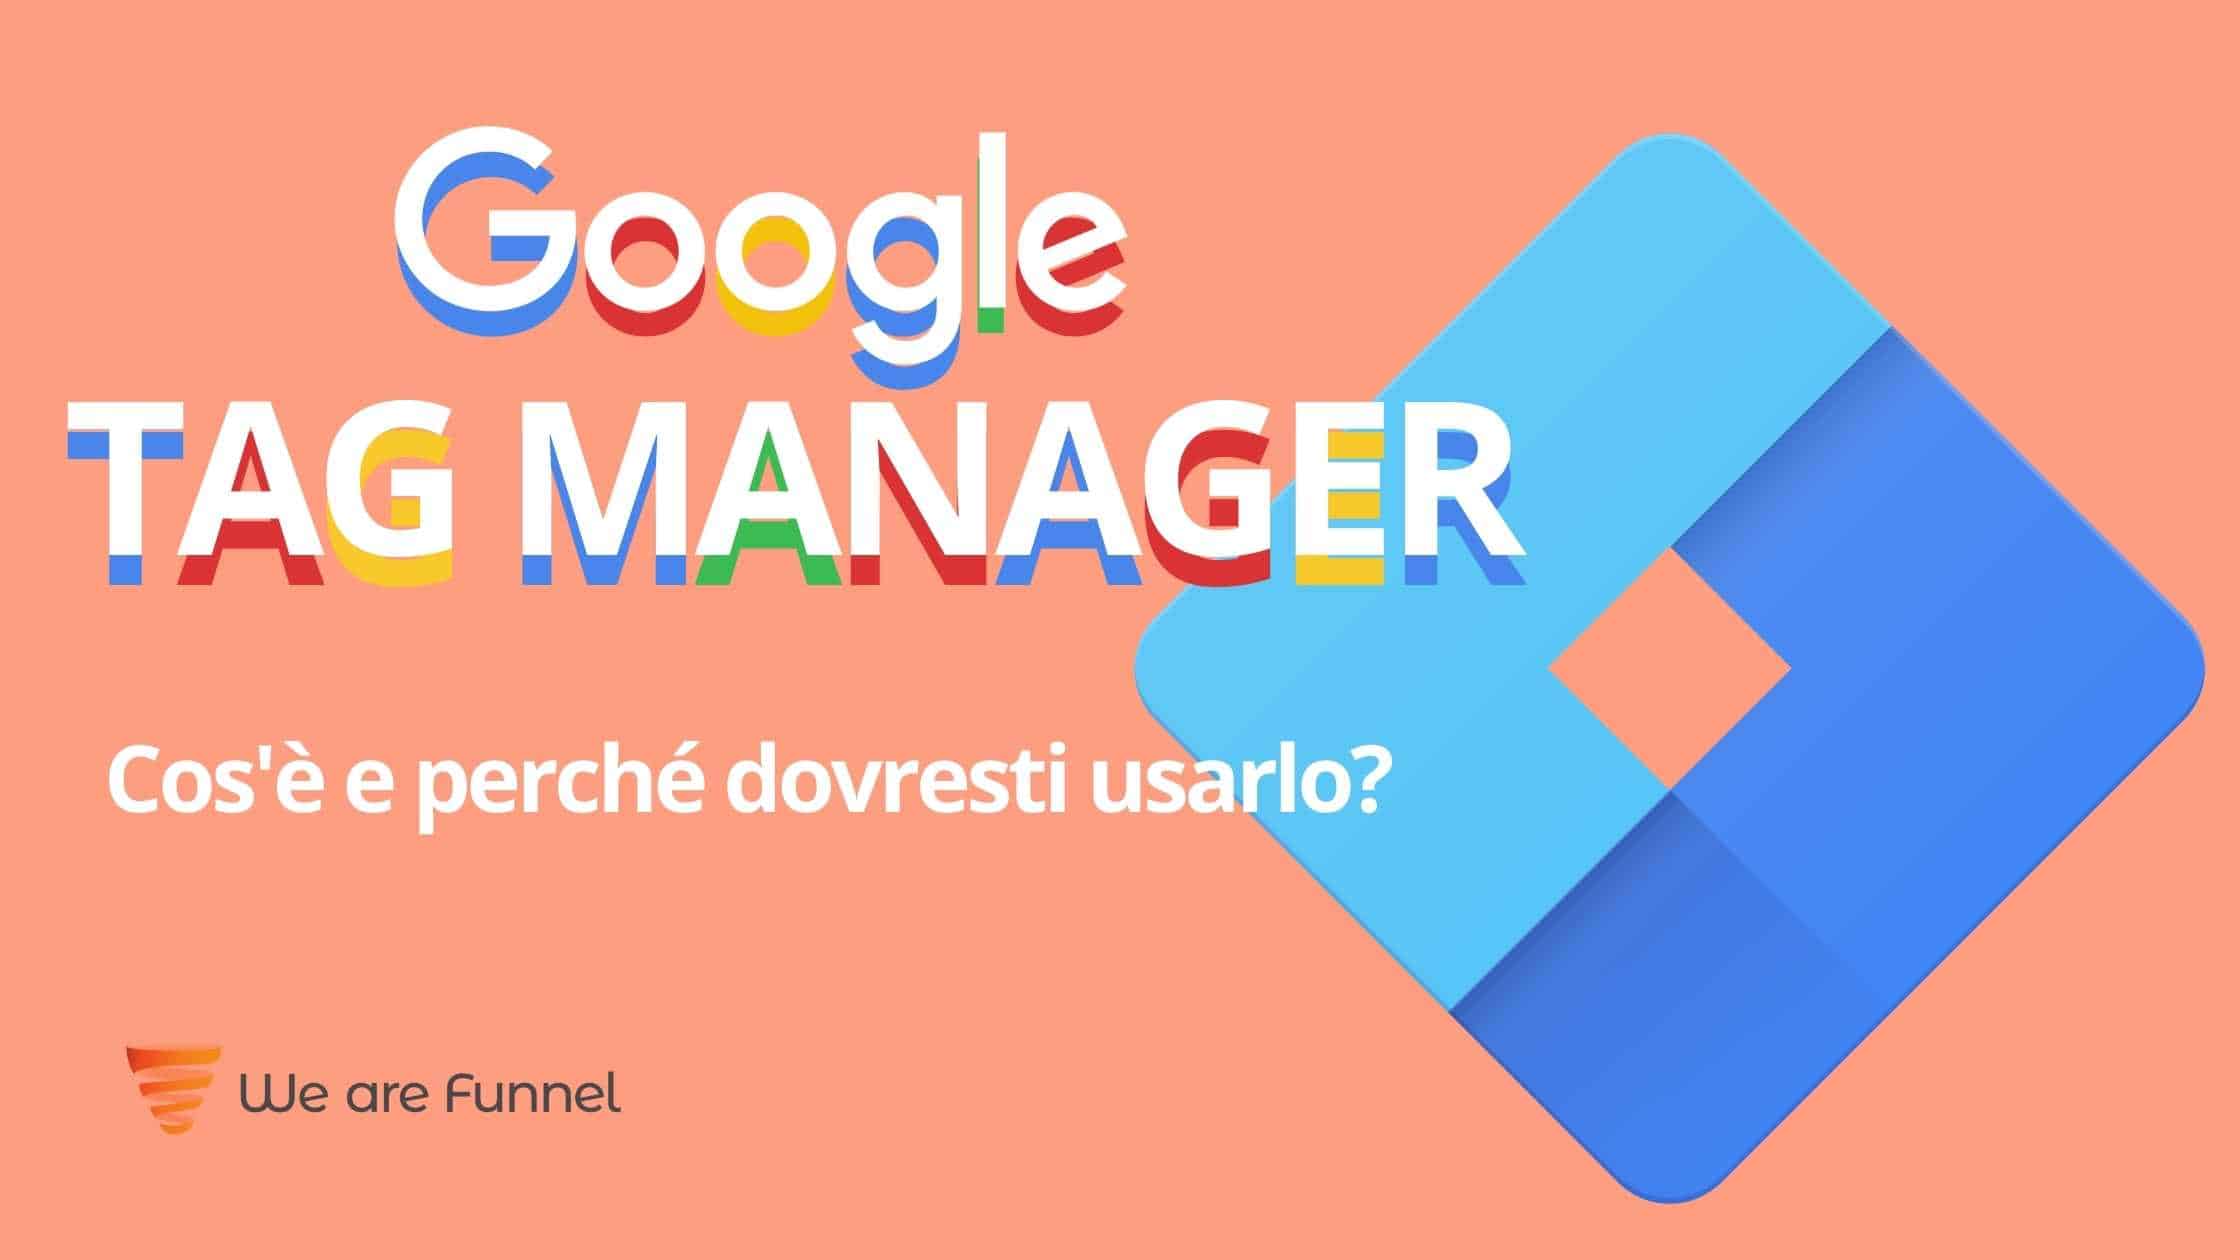 Google Tag Manager cos'è e perché dovresti usarlo?